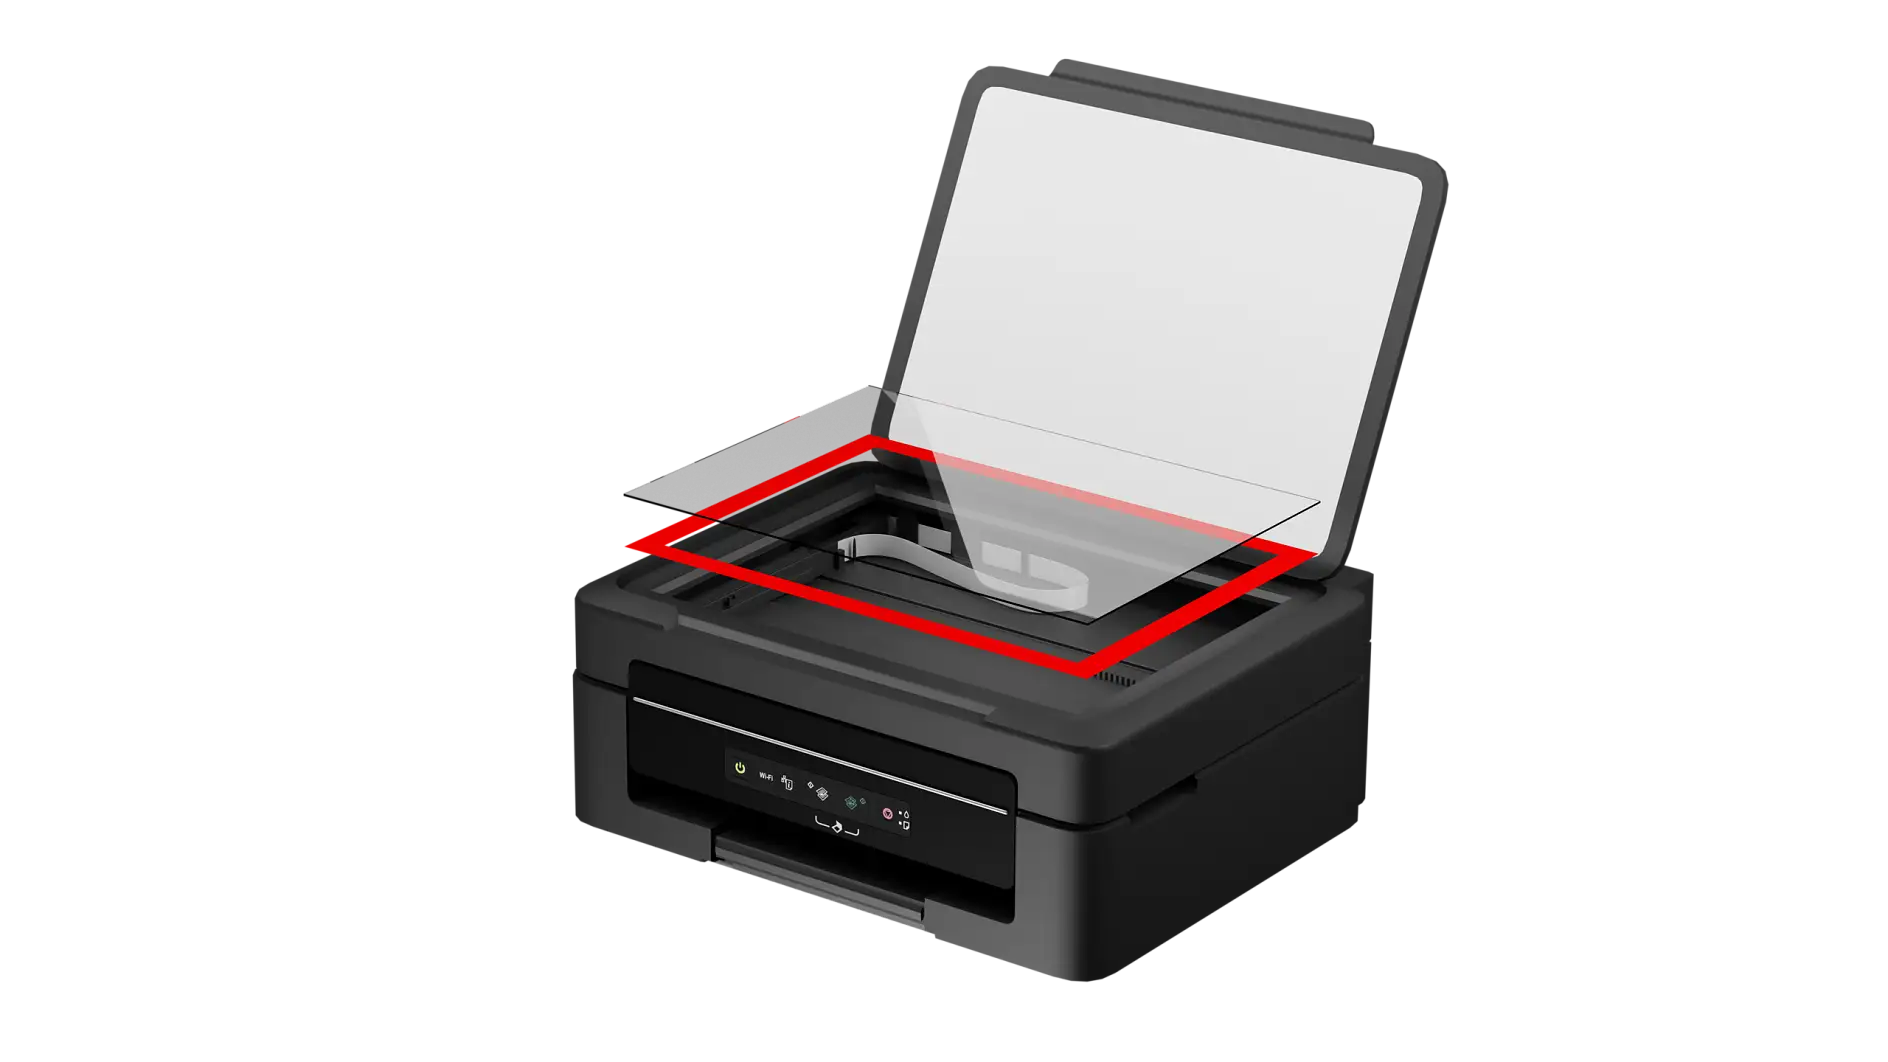 Скло сканера монтується на корпус принтера за допомогою двосторонньої стрічки.